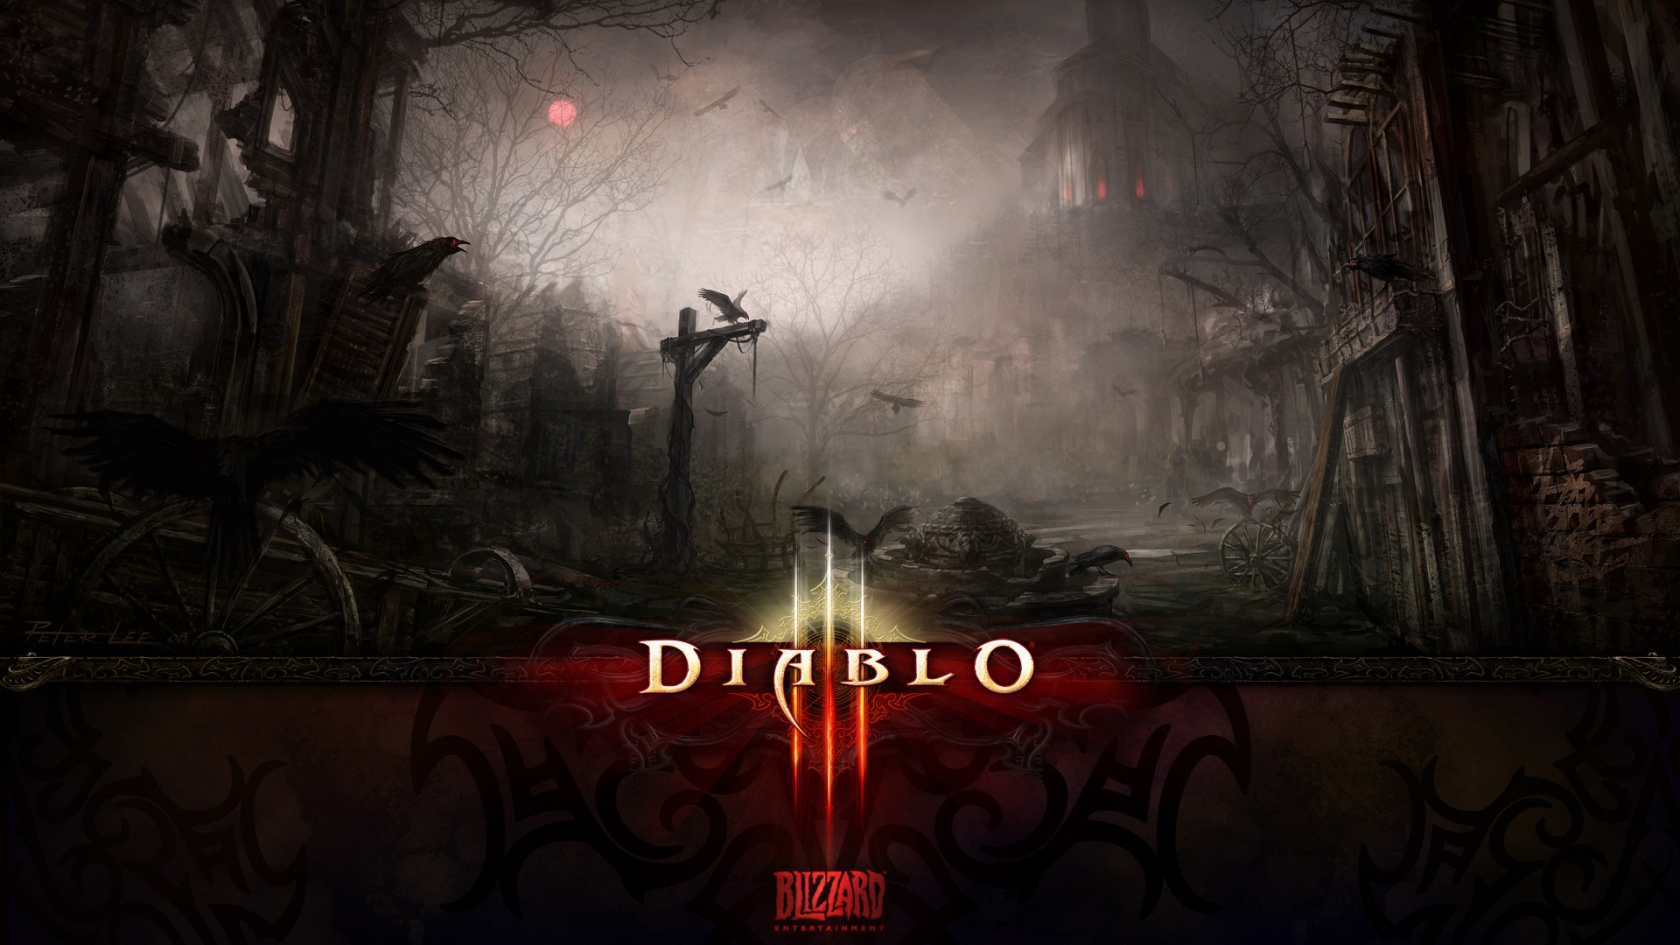 Dark Death Diablo 3 for 1680 x 945 HDTV resolution